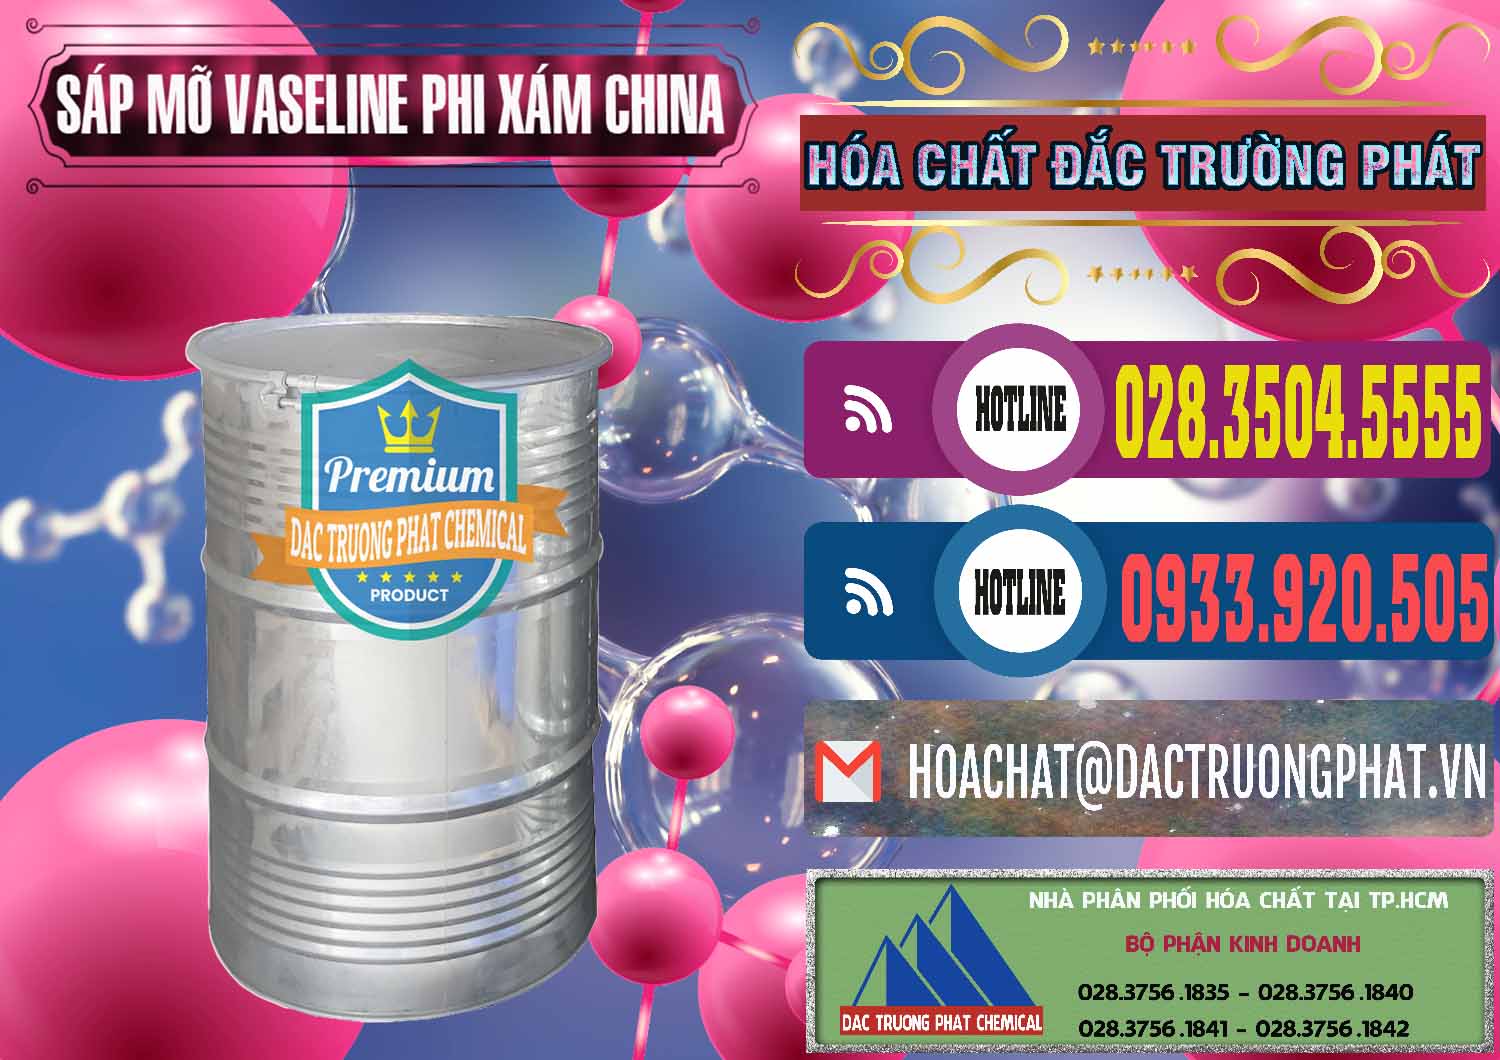 Cty chuyên kinh doanh _ bán Sáp Mỡ Vaseline Phi Xám Trung Quốc China - 0291 - Cty chuyên nhập khẩu ( cung cấp ) hóa chất tại TP.HCM - muabanhoachat.com.vn